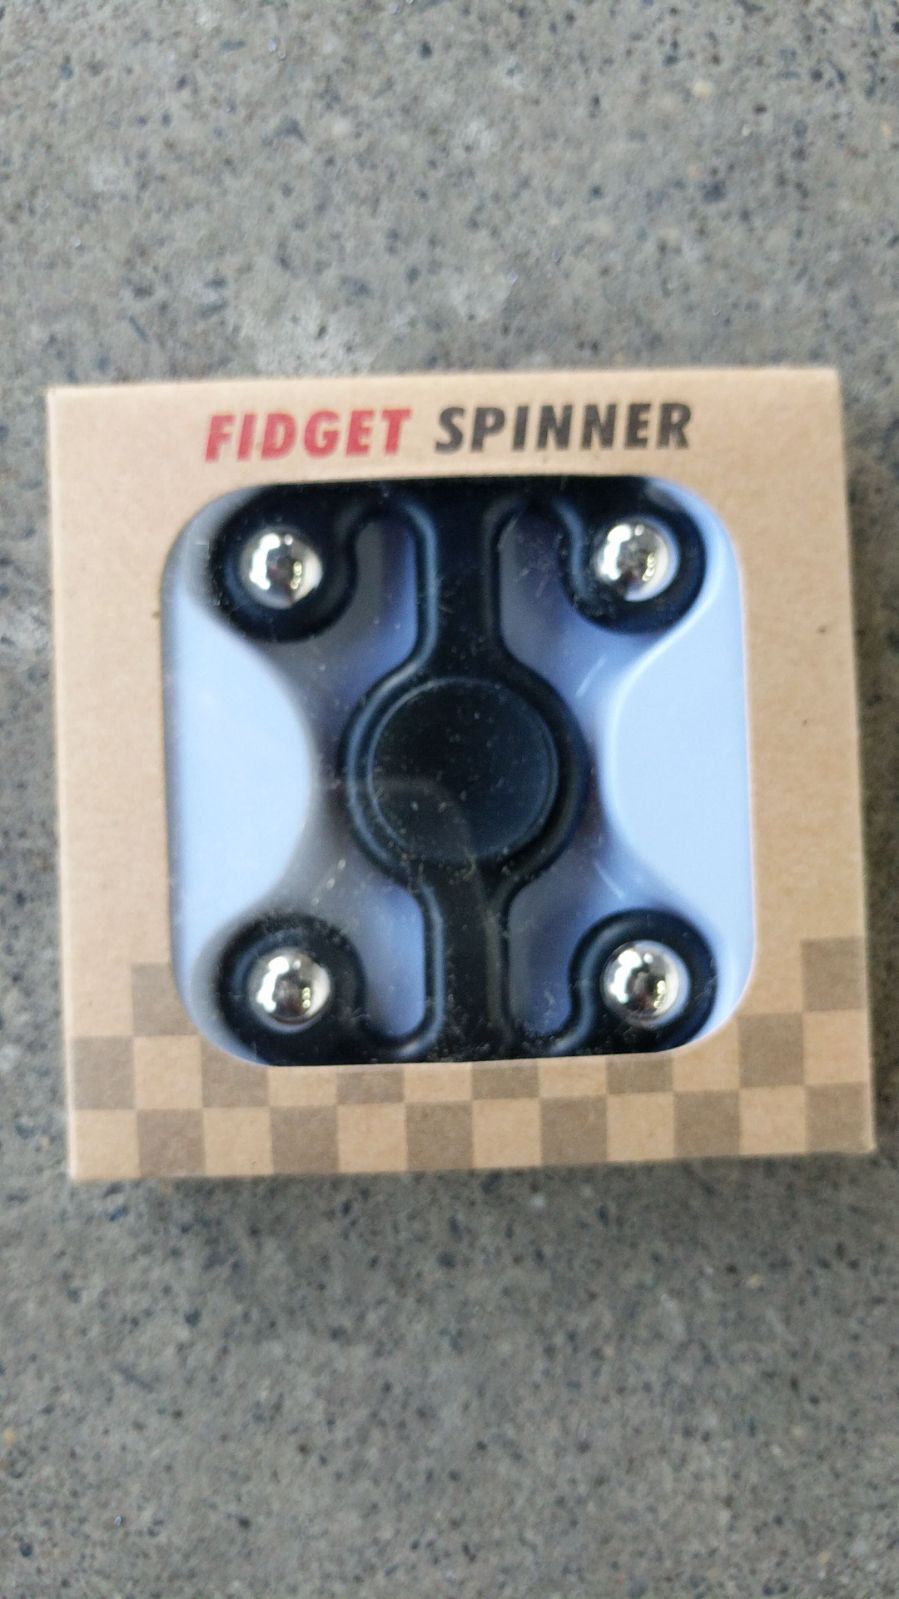 4 Sided Fidgit Fidget Spinner, Black